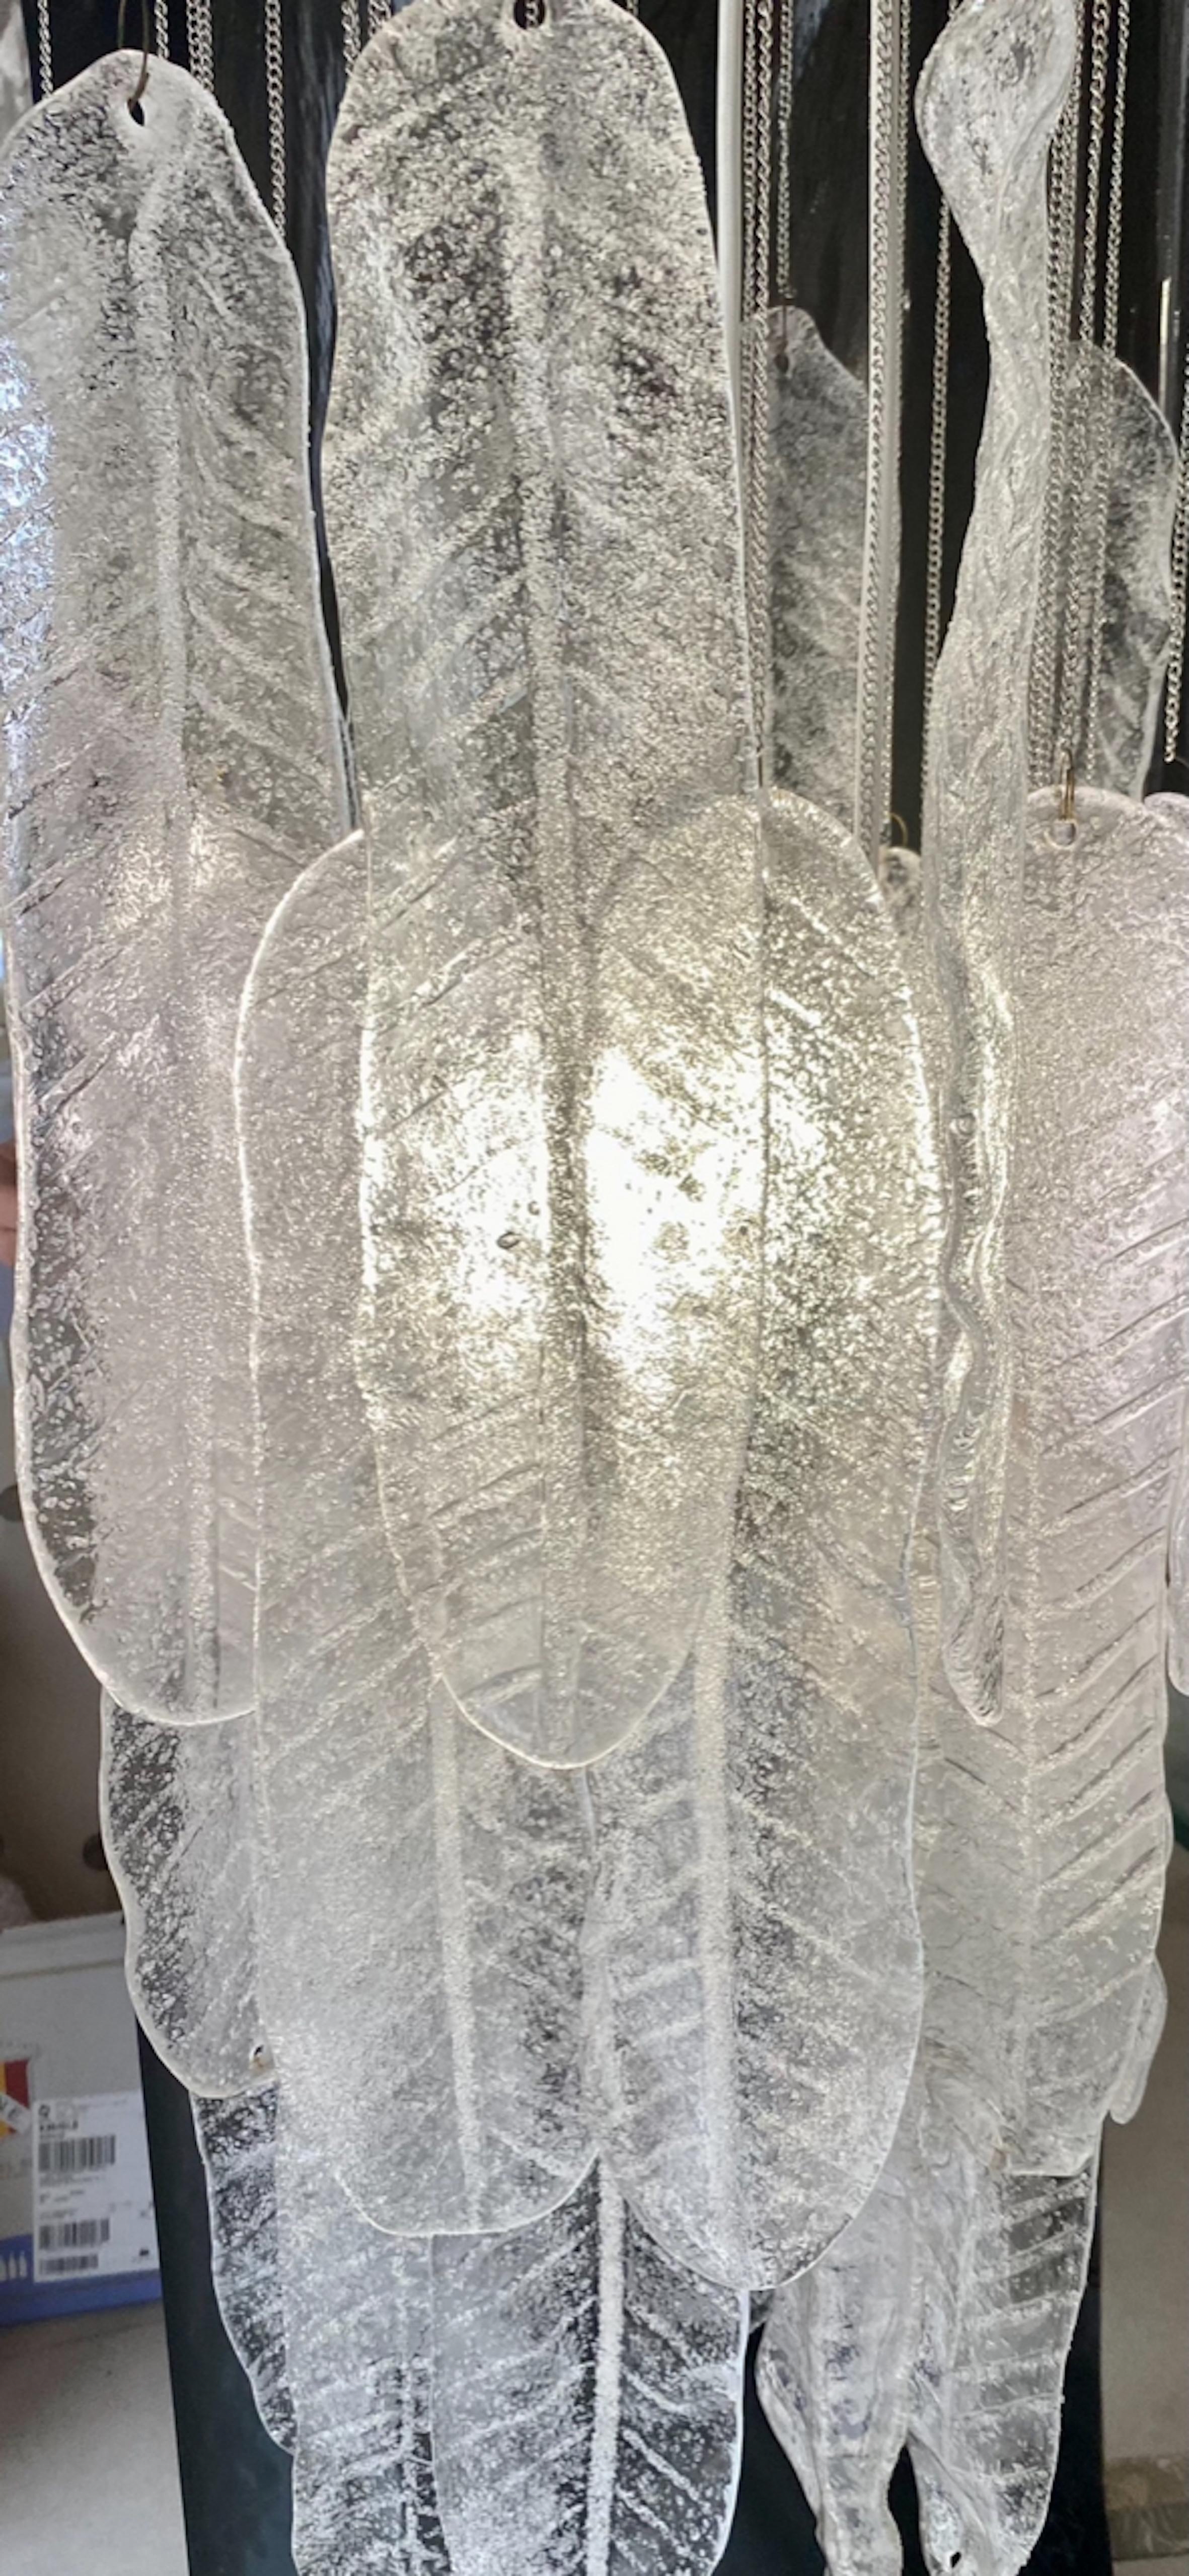 Exceptionnel pendentif en cascade avec feuilles en verre Murano surdimensionné d'environ 30 cm avec structure en CHROME. Le design et la qualité du verre font de cette pièce le meilleur du design italien.
Ce pendentif unique en cascade Mazzega en